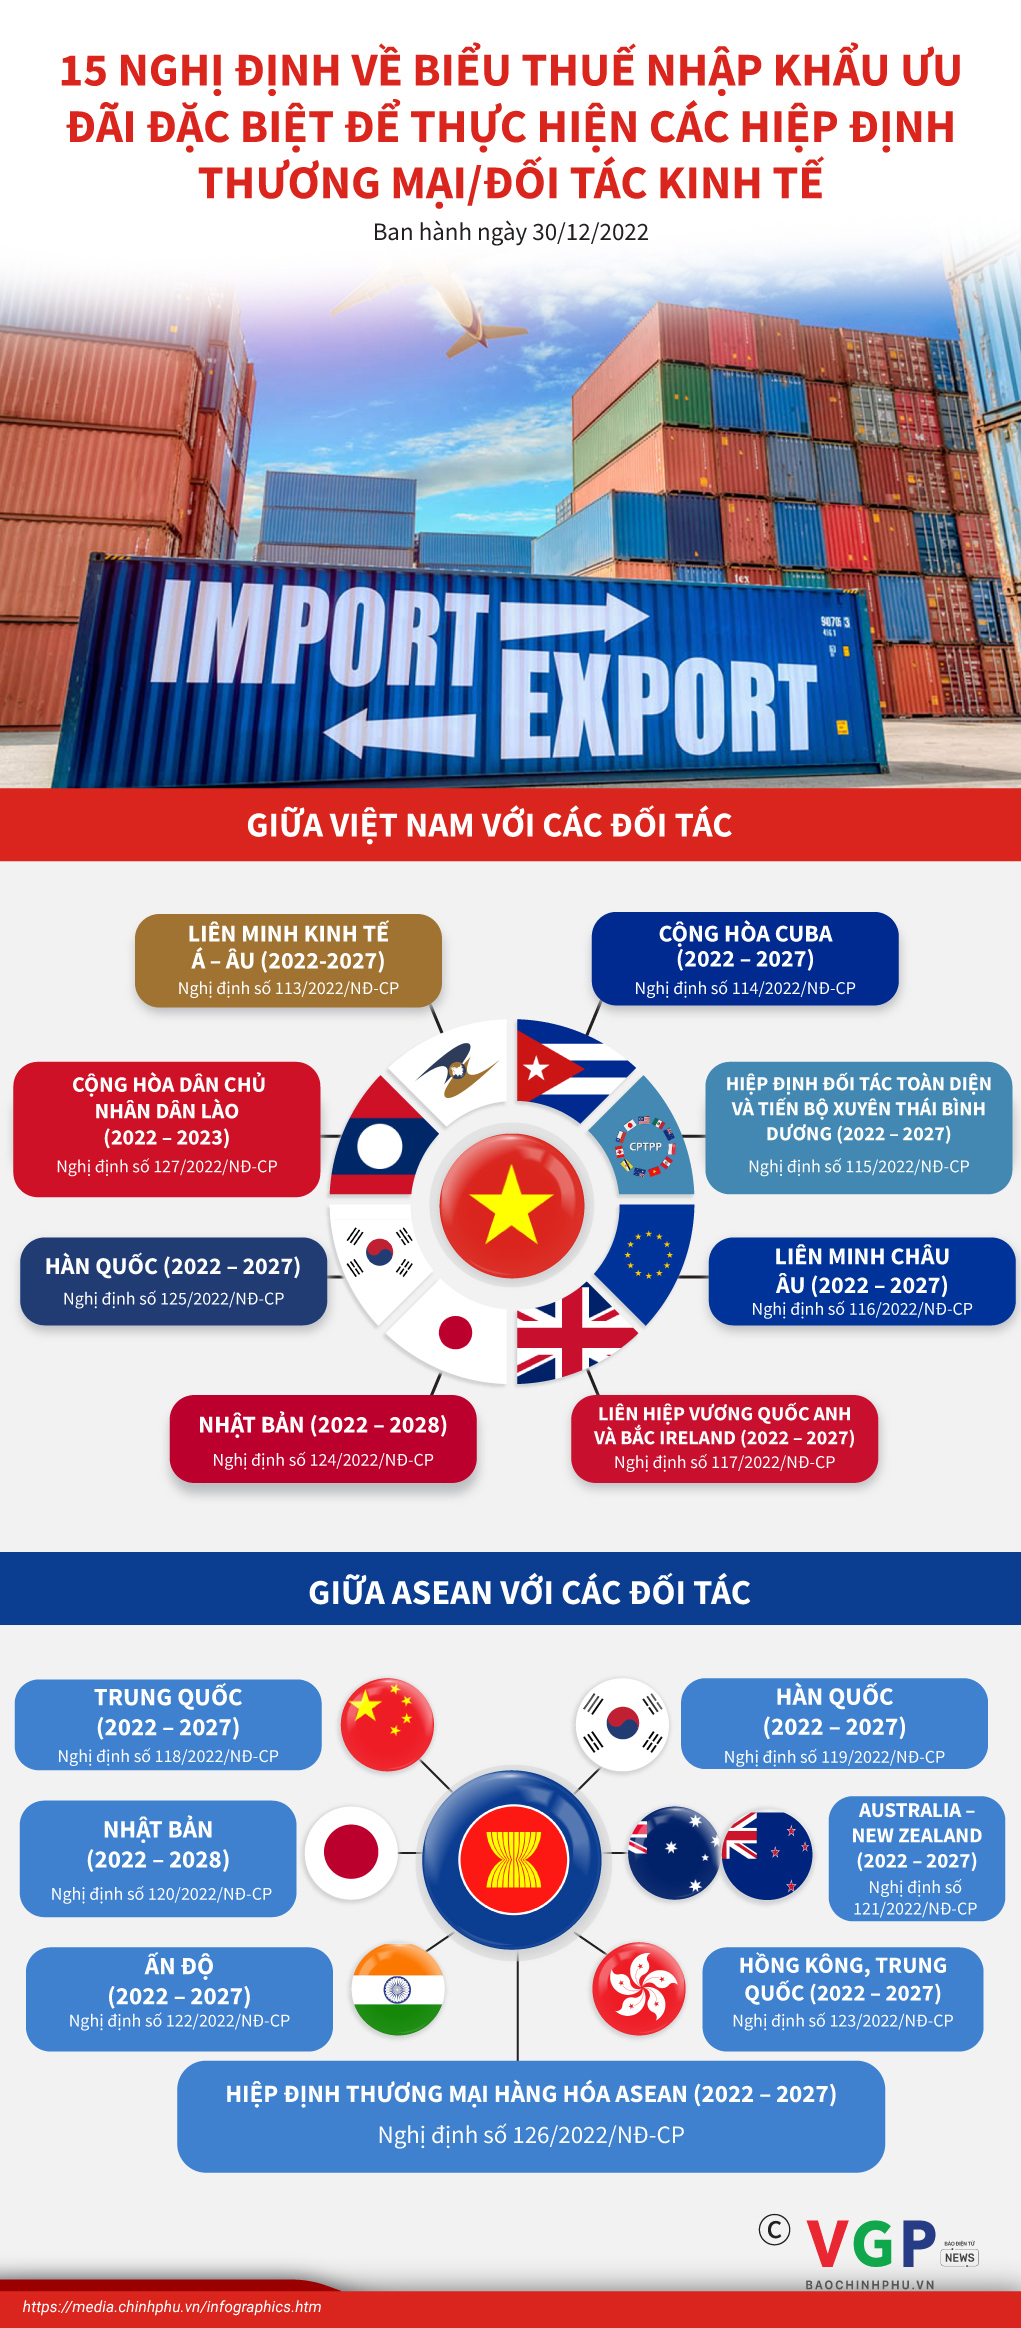 15 nghị định về Biểu thuế nhập khẩu ưu đãi đặc biệt để thực hiện các Hiệp định Thương mại, Hiệp định Đối tác kinh tế - Ảnh 1